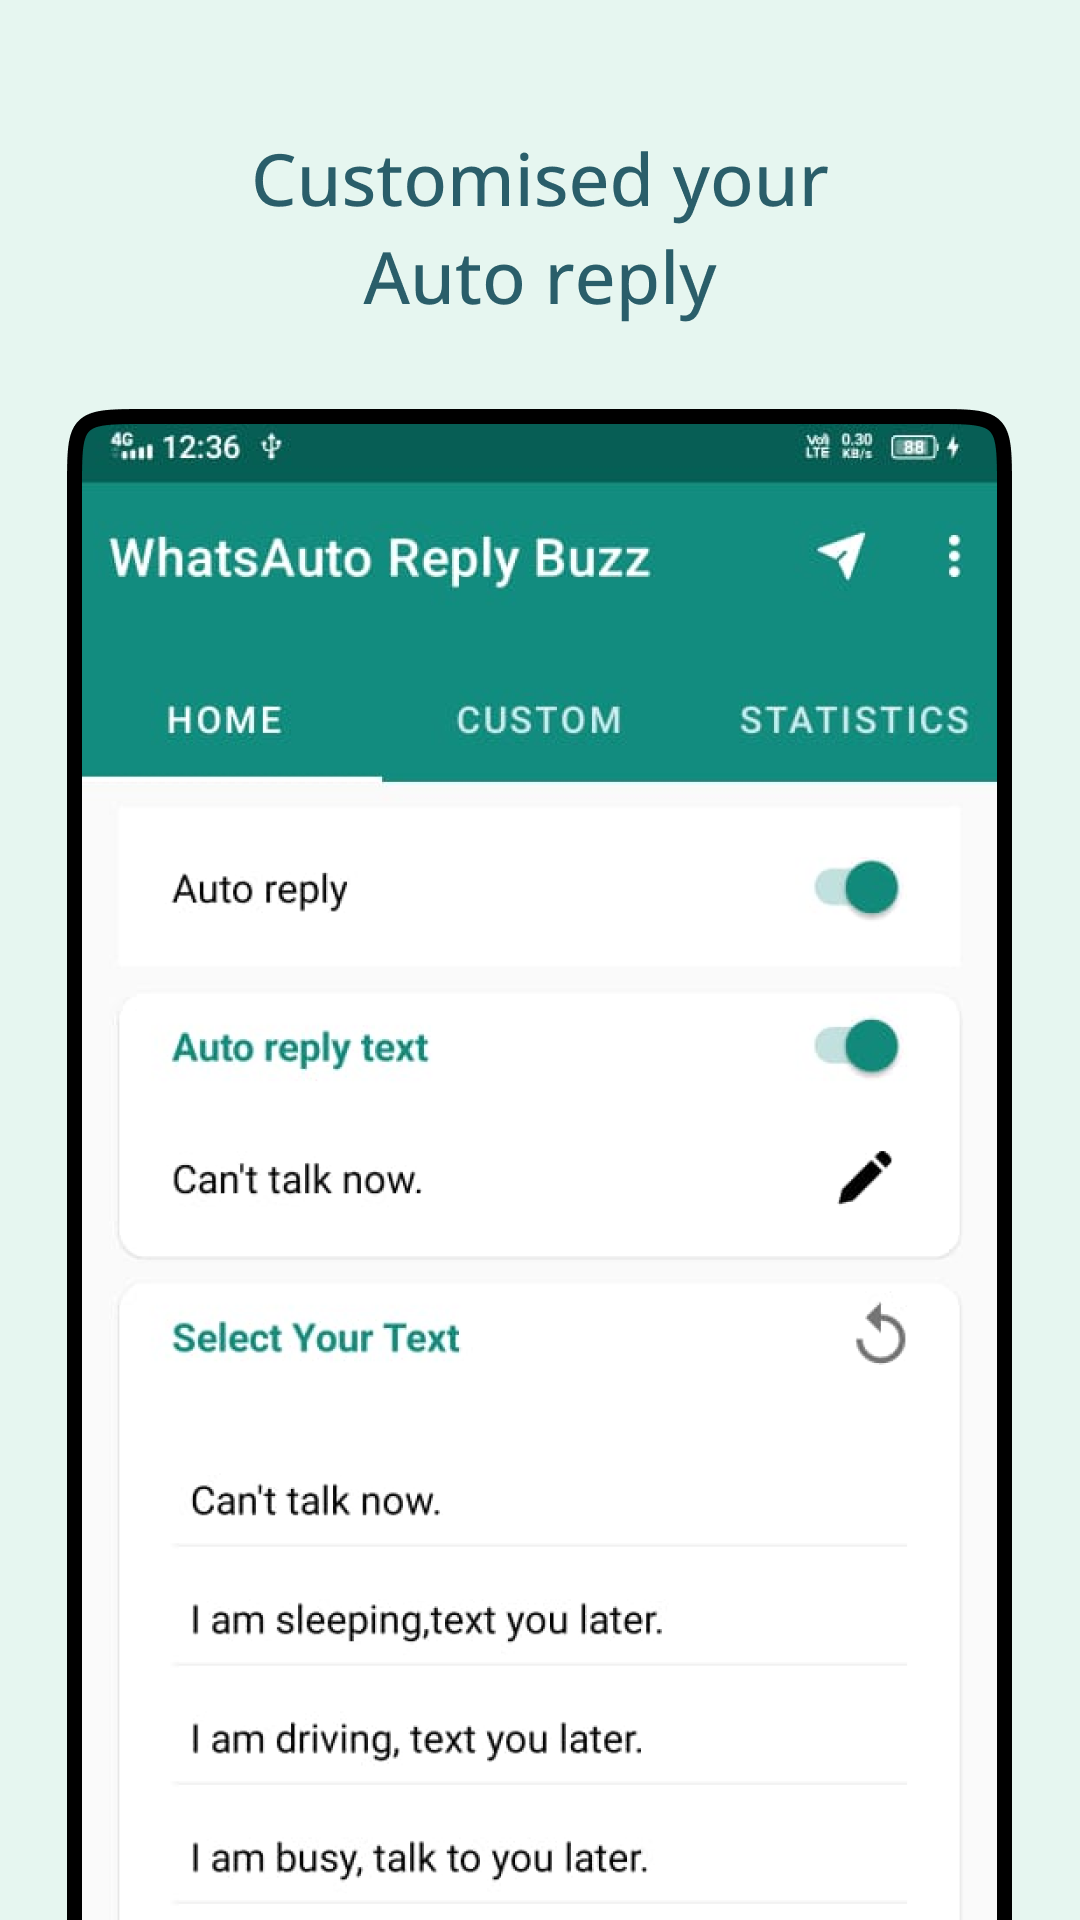 WhatsAuto Reply Buzz